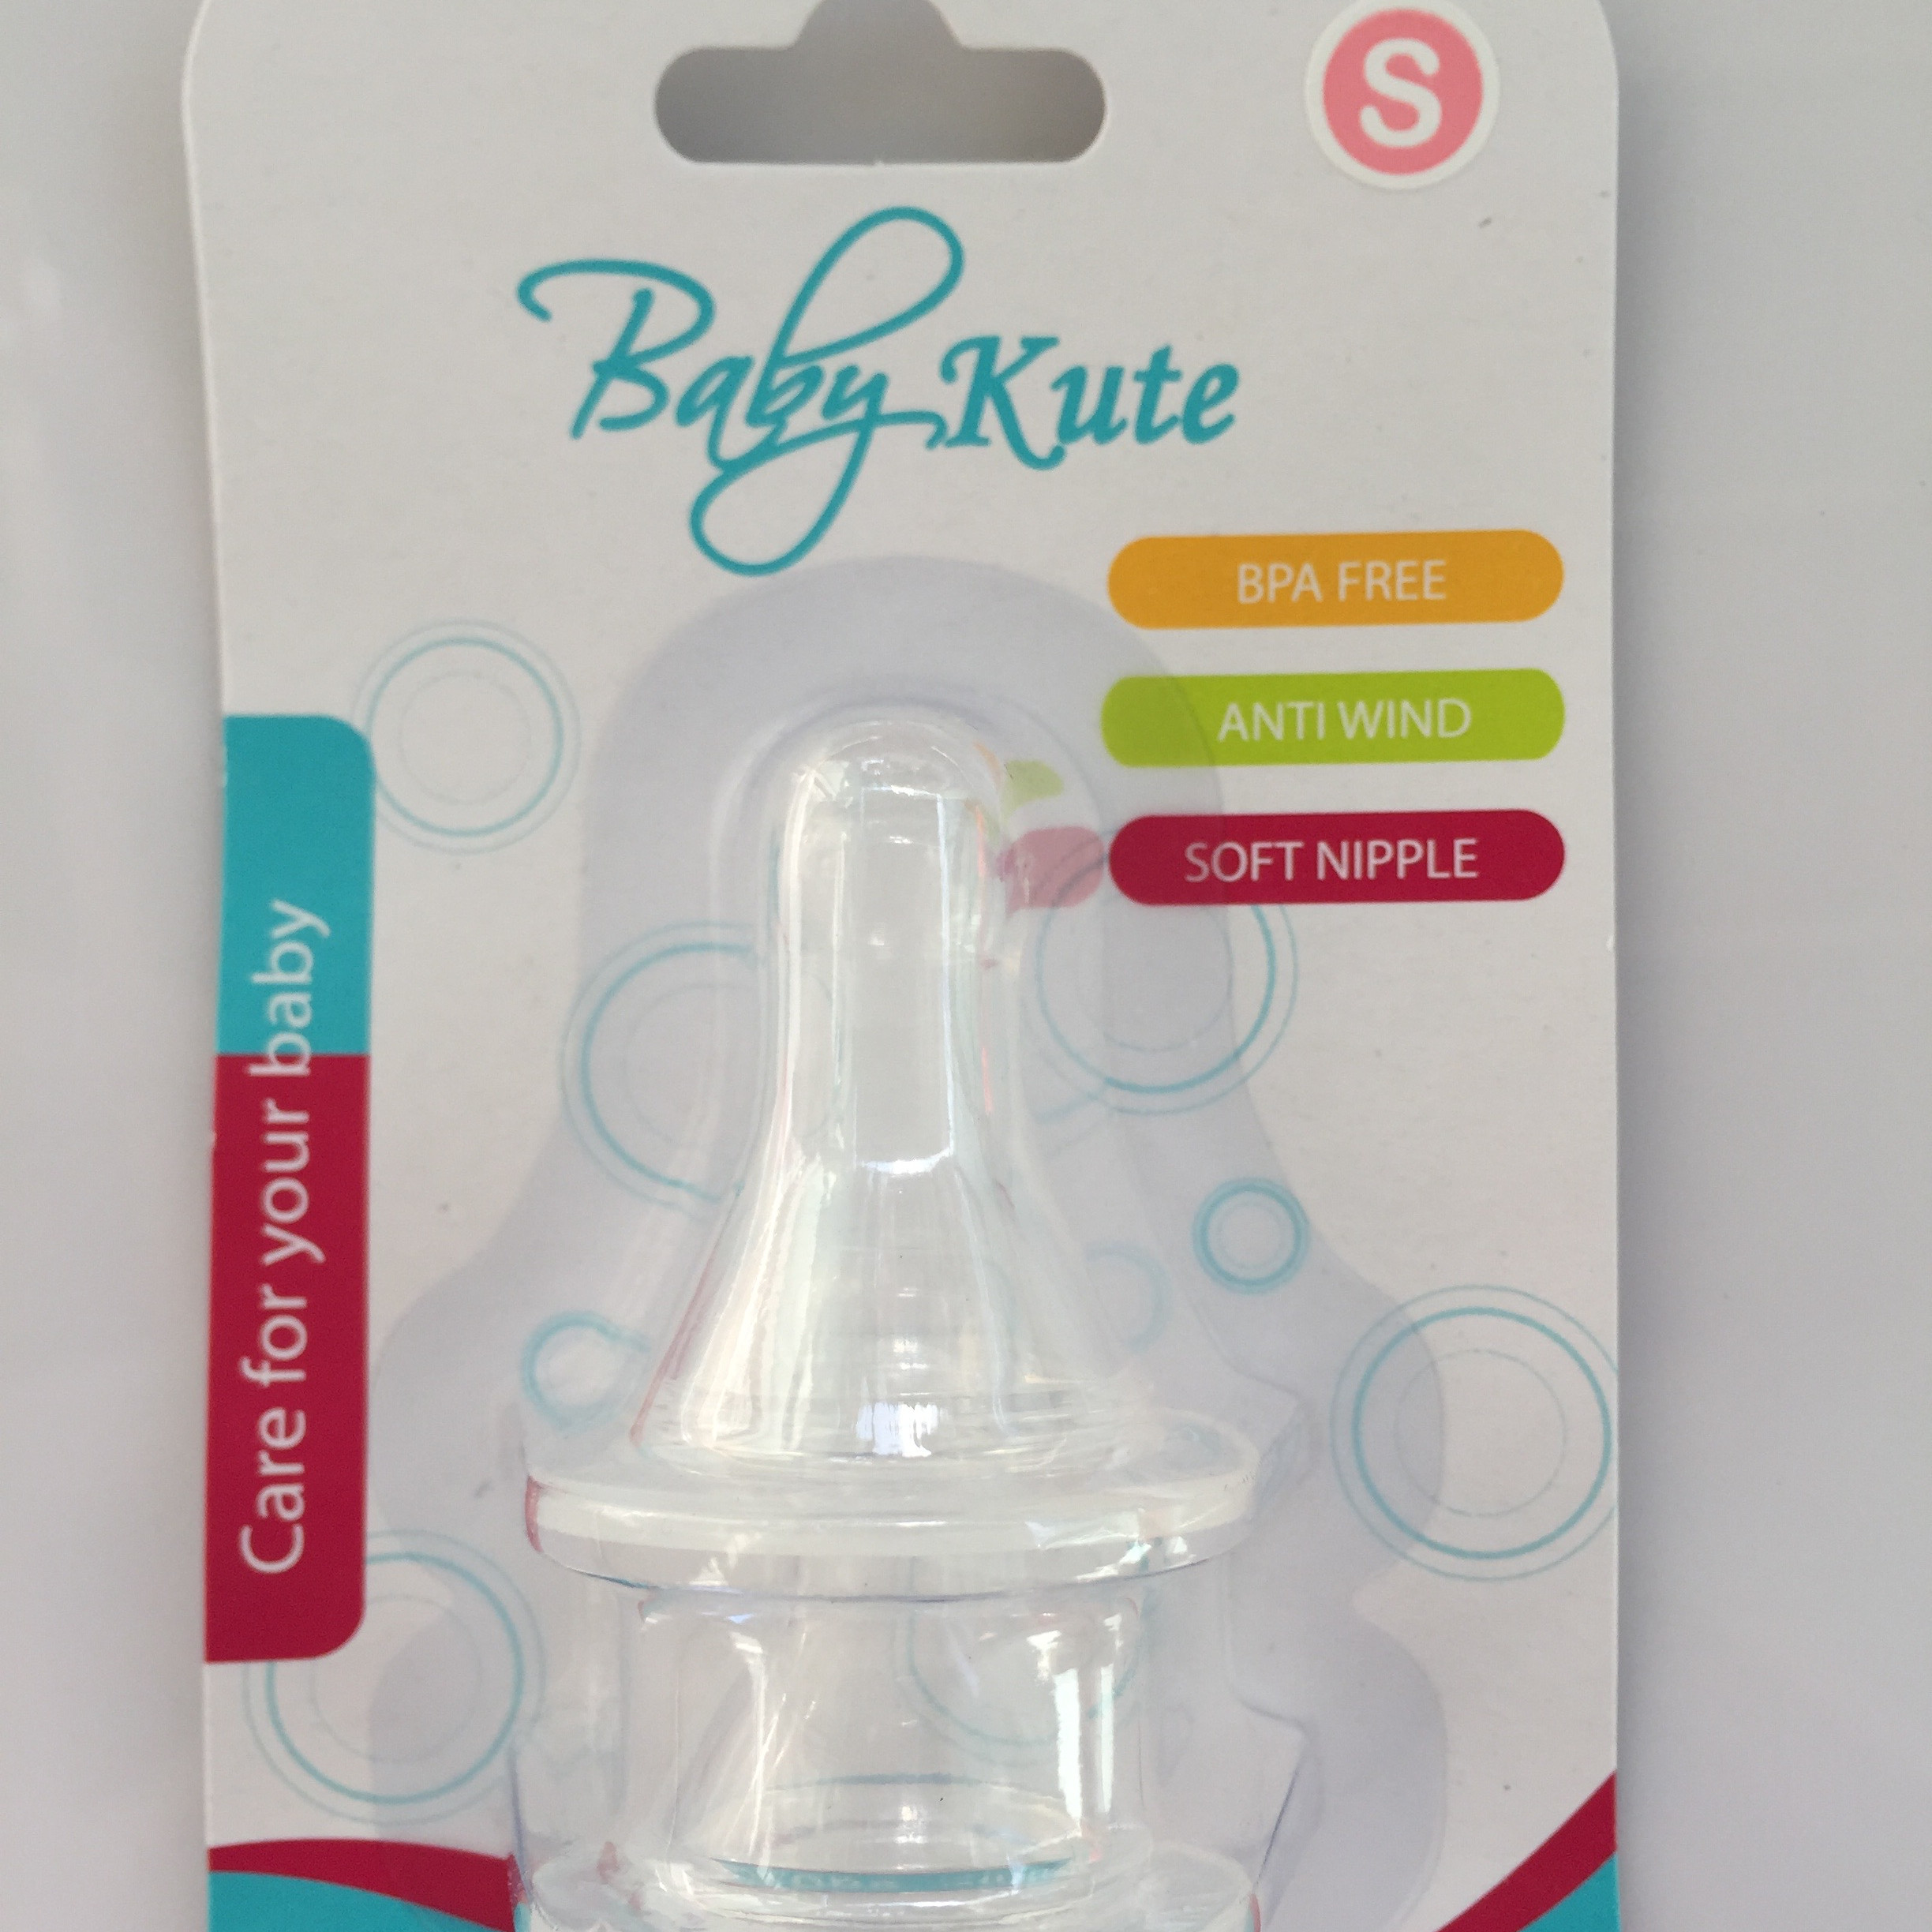 Bộ 2 núm ty cổ hẹp bằng Silicone siêu mềm an toàn cho bé Baby Kute size S nhập khẩu từ Thái Lan